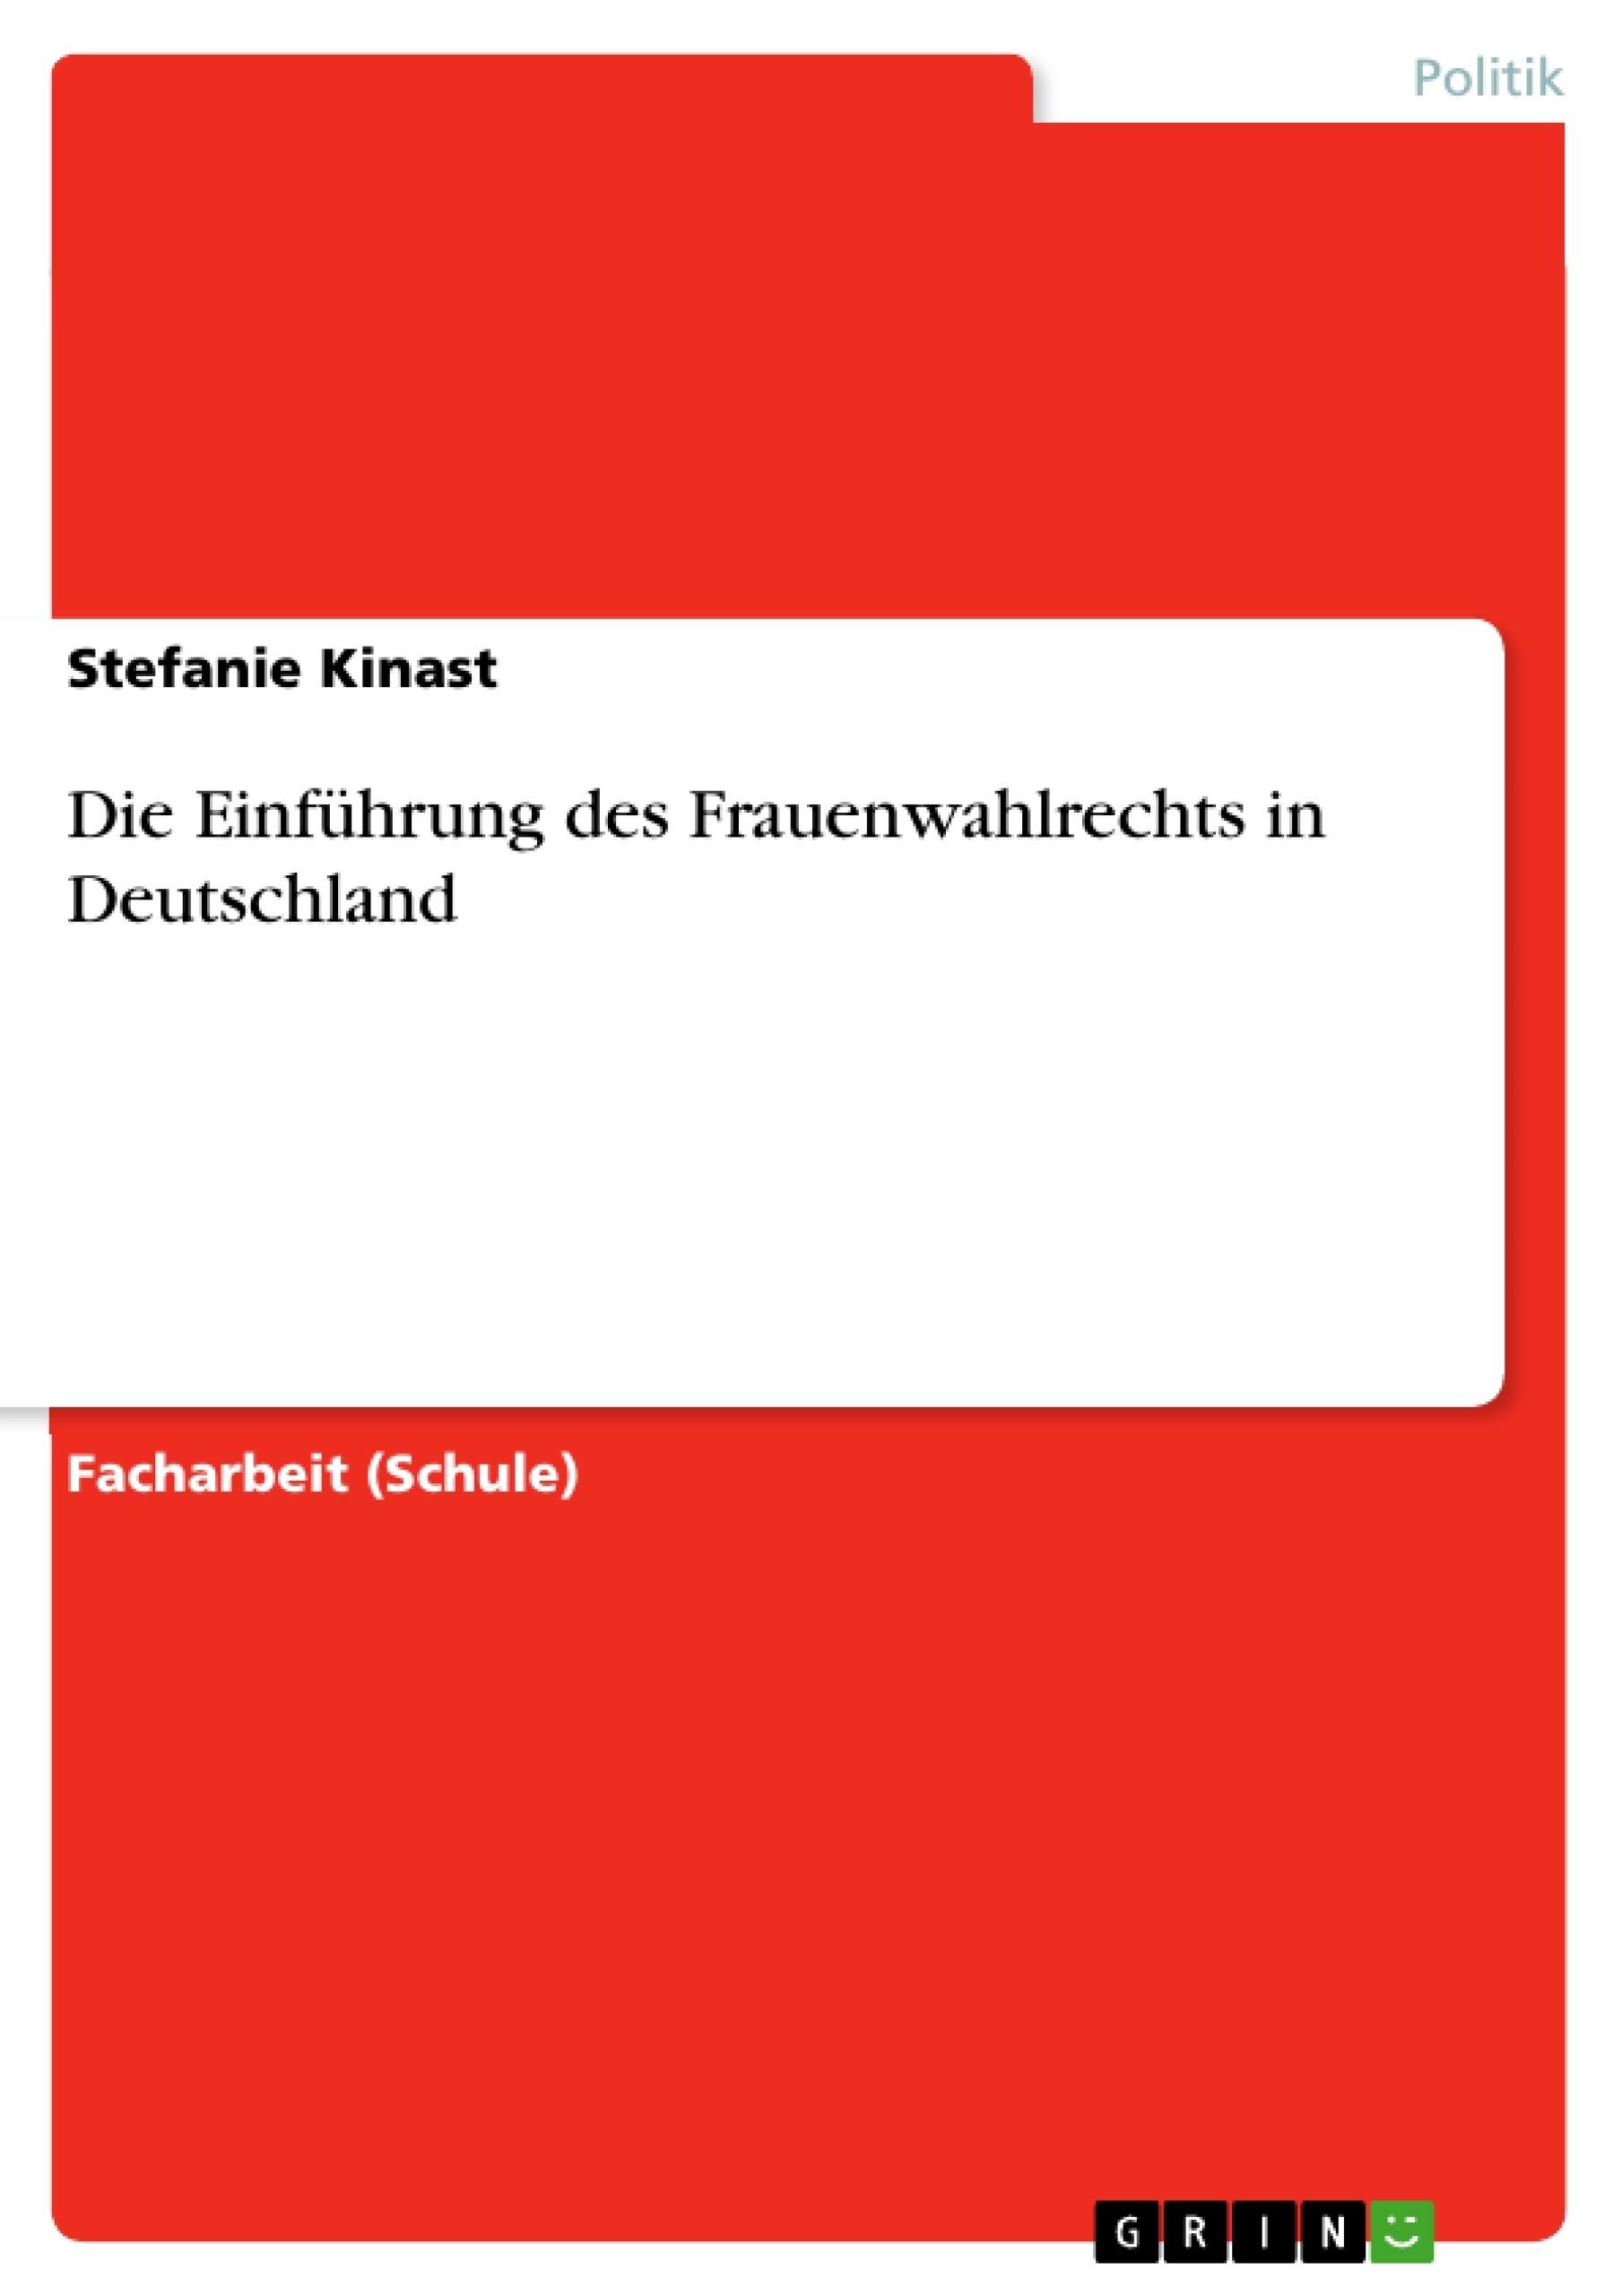 Title: Die Einführung des Frauenwahlrechts in Deutschland